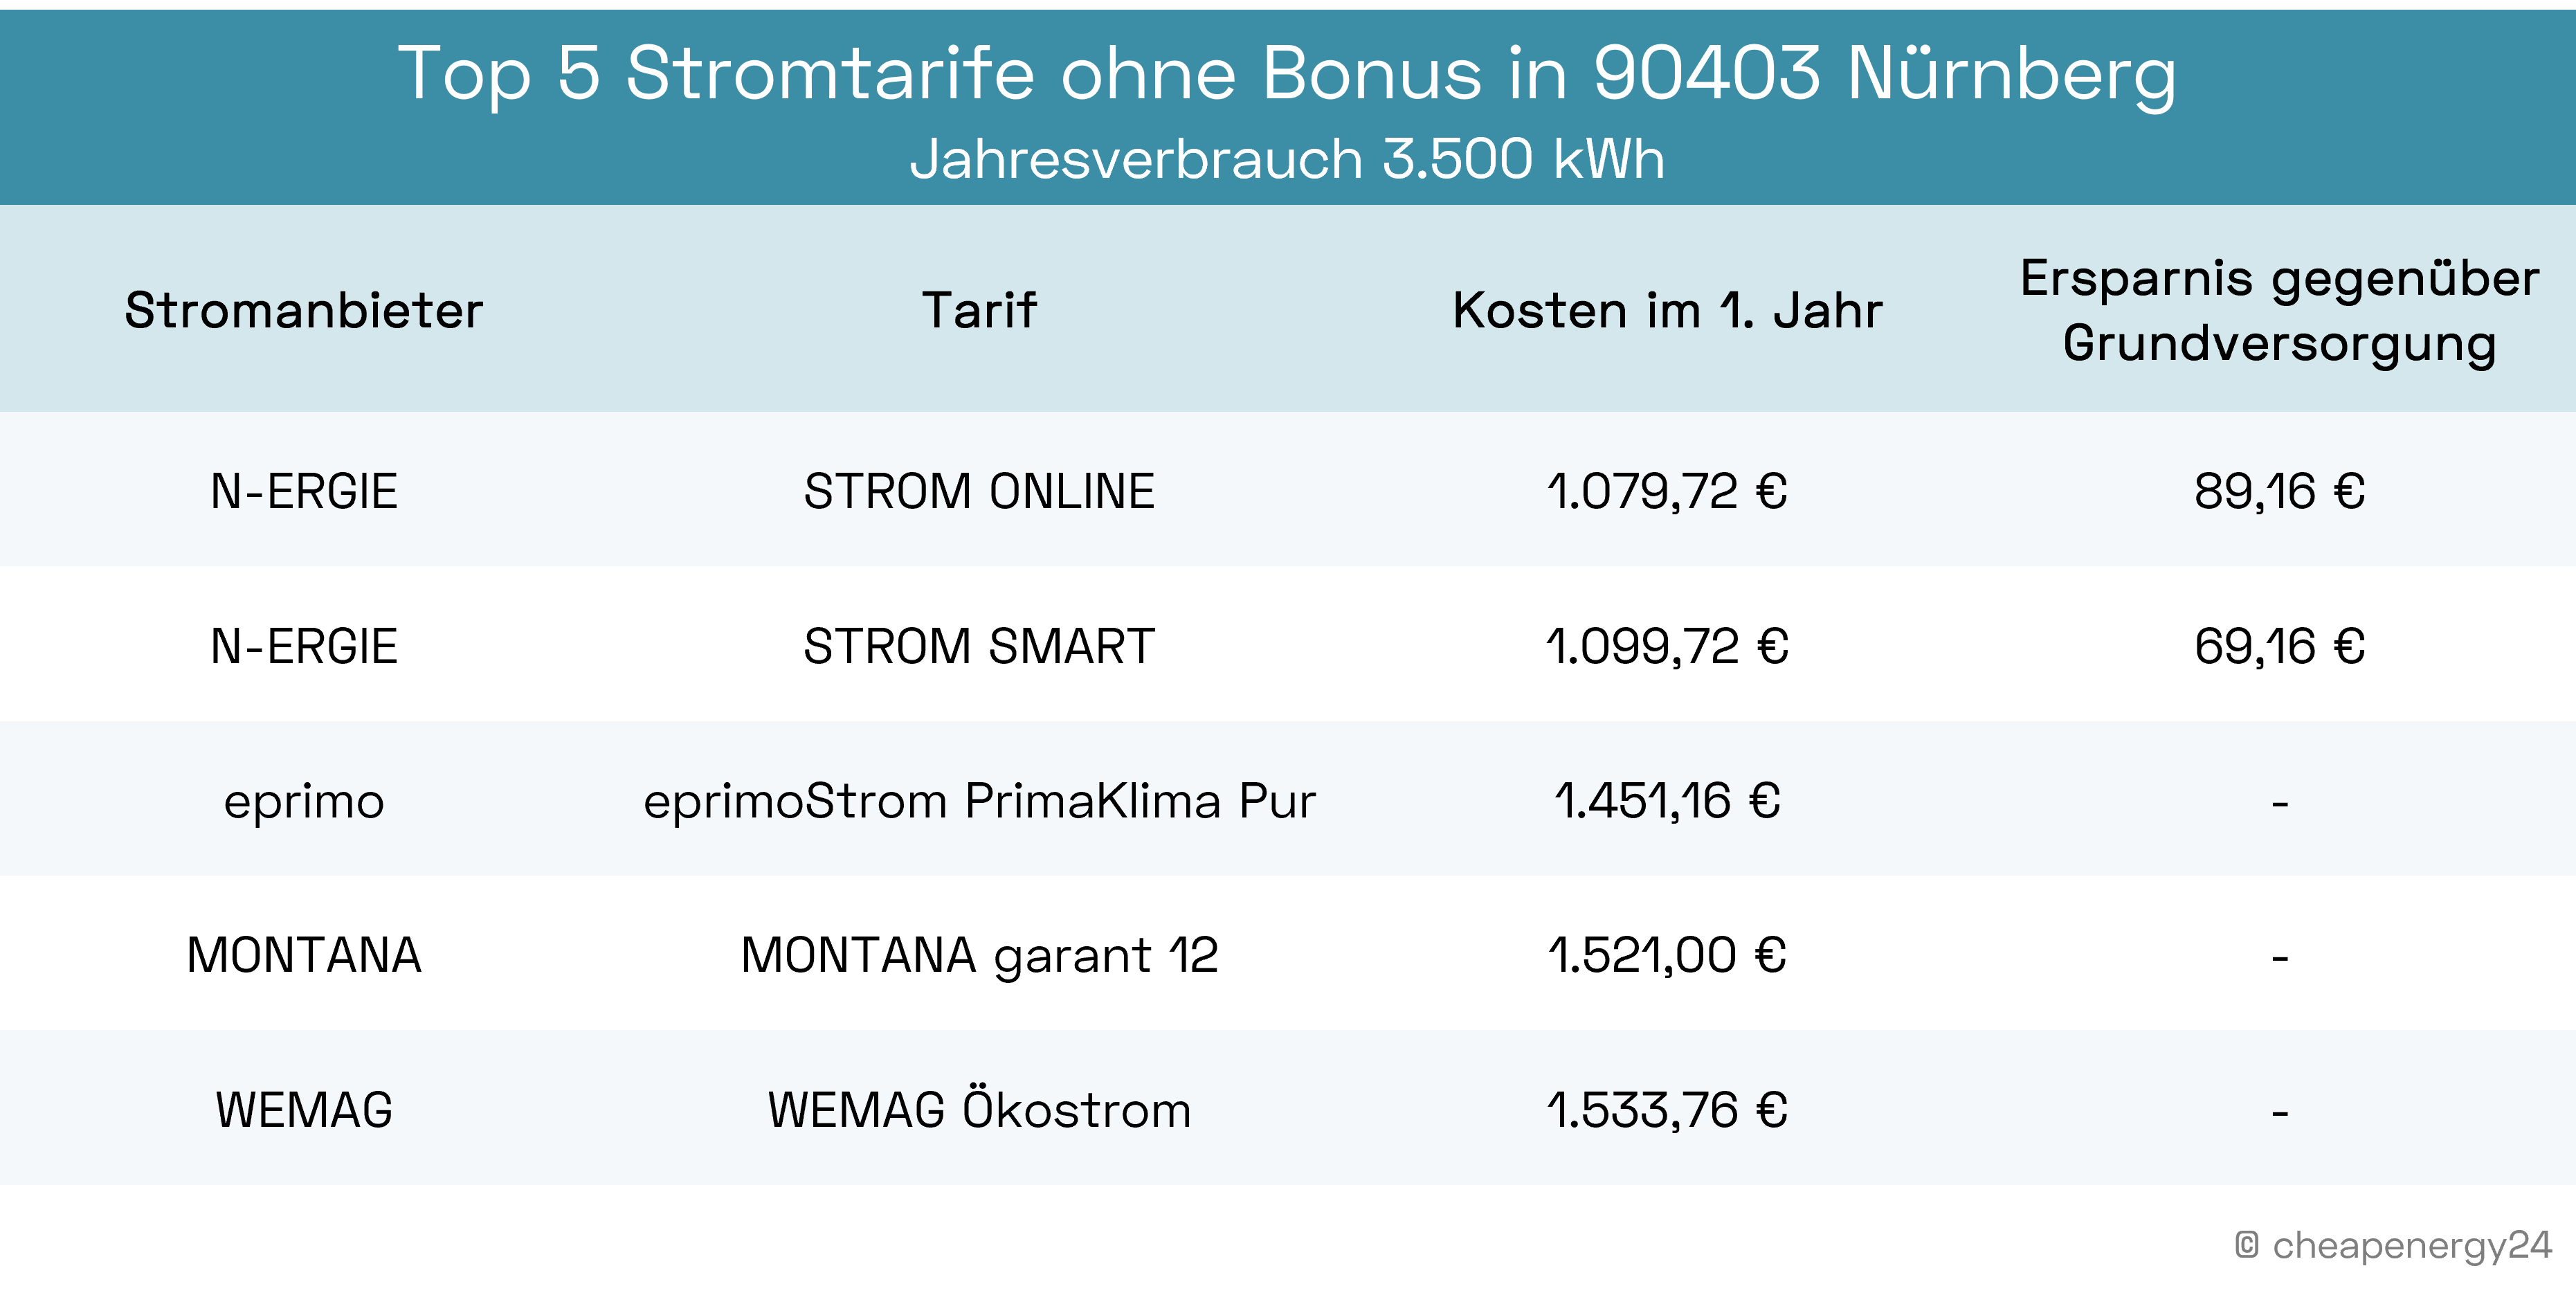 Top 5 Stromtarife ohne Bonus in Nürnberg